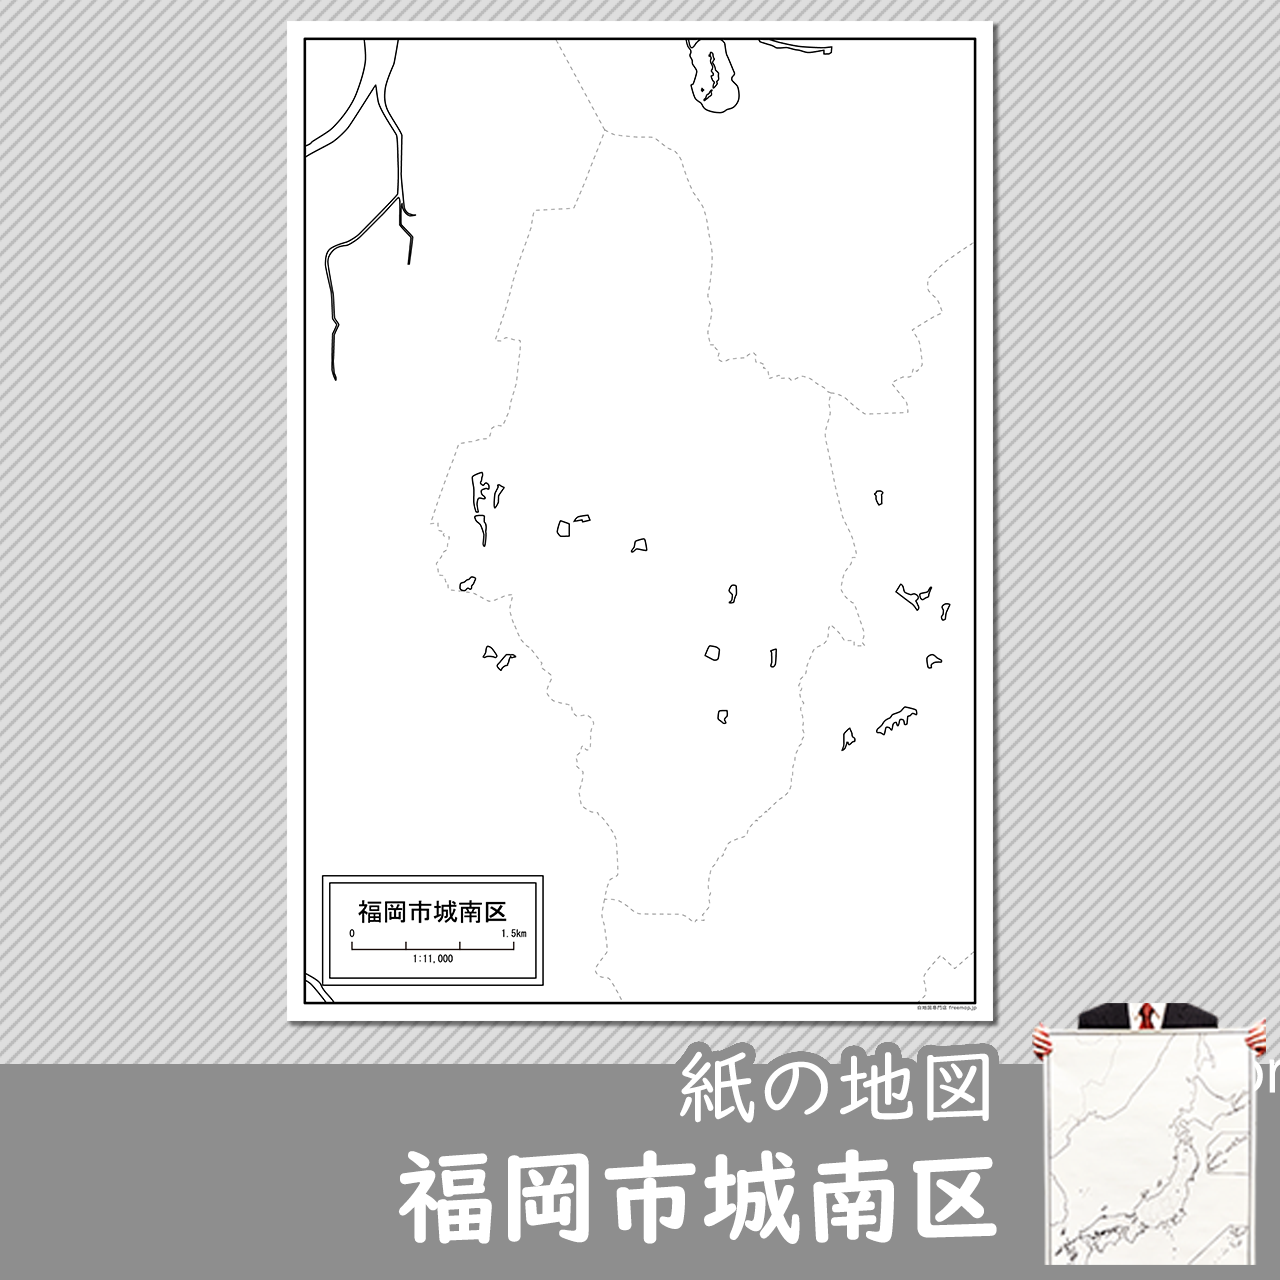 福岡市城南区の紙の白地図のサムネイル